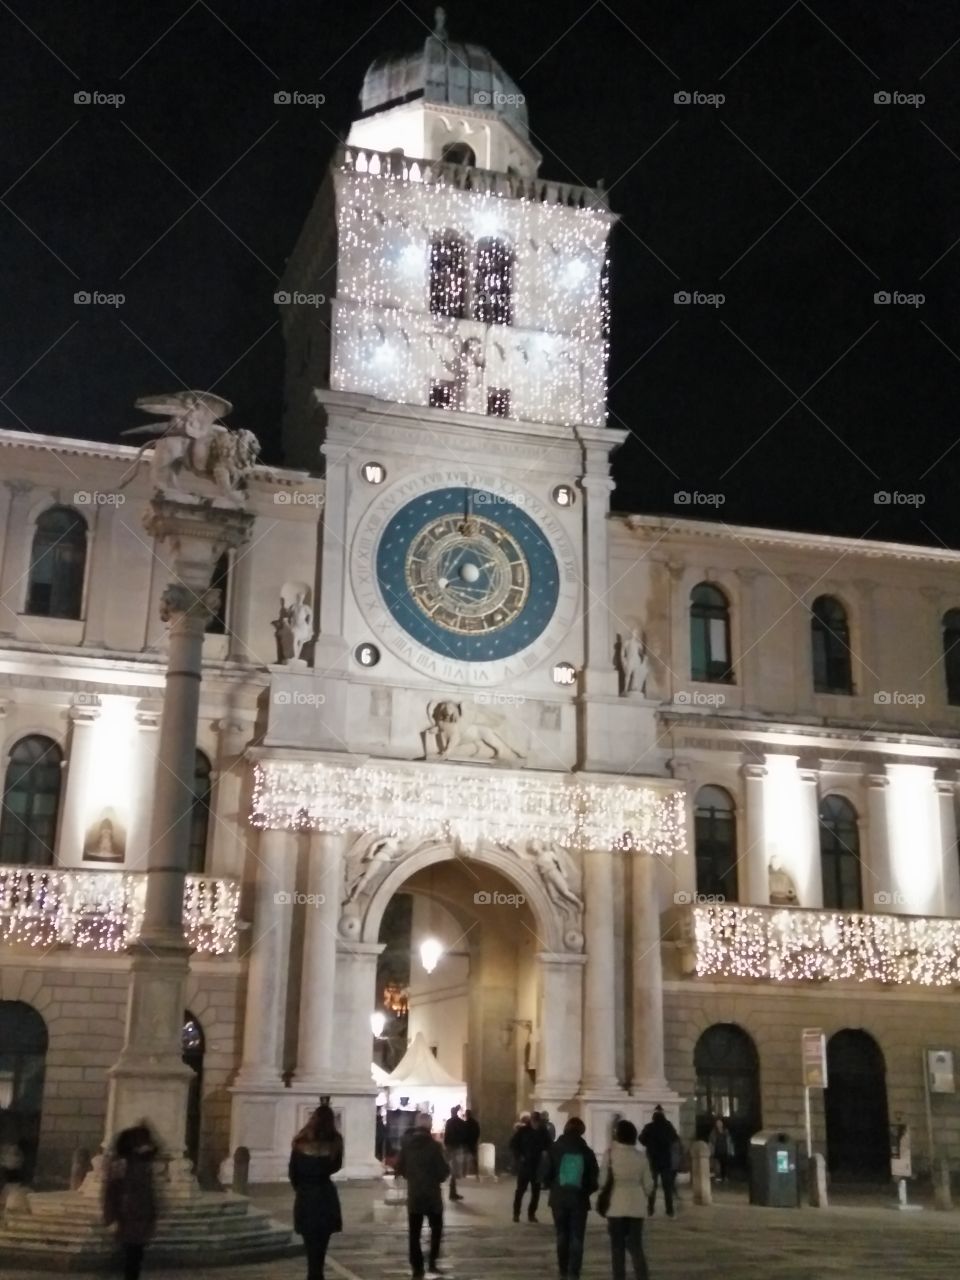 Piazza dei signori square Padua italy medieval clock